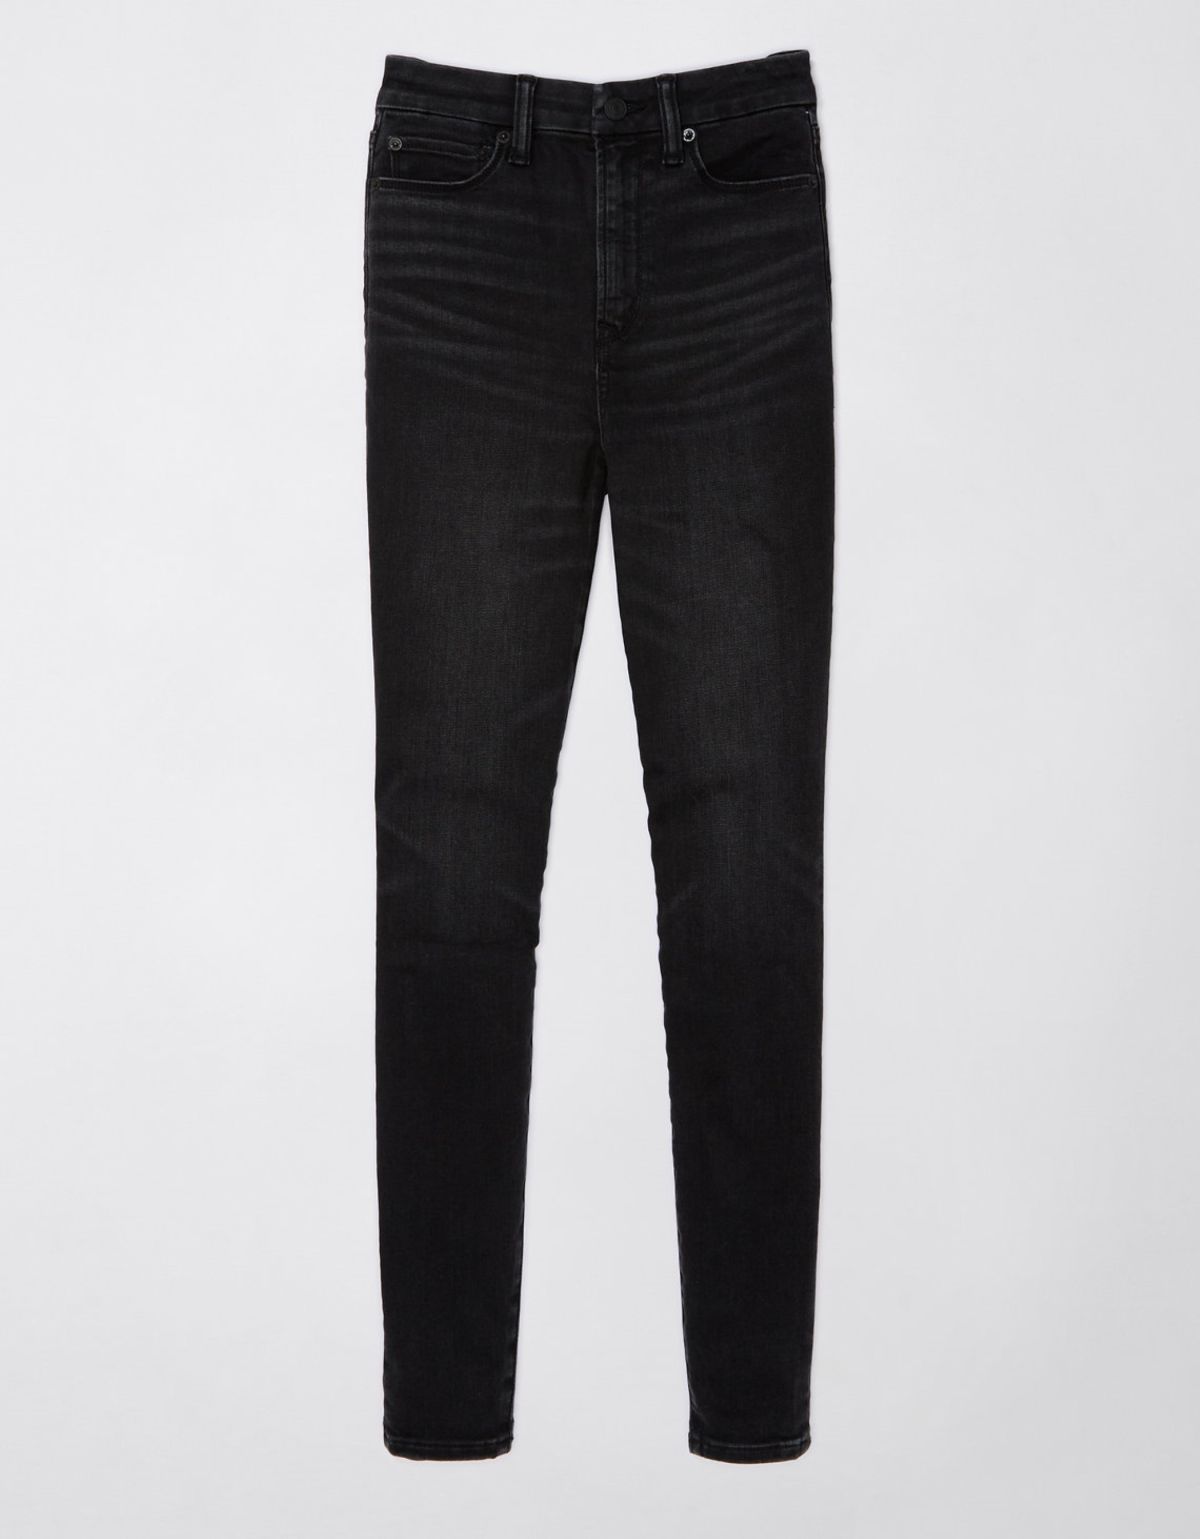  מכנסי ג'ינס SELF SIZE SUPER HIGH RISE JEGG של AMERICAN EAGLE